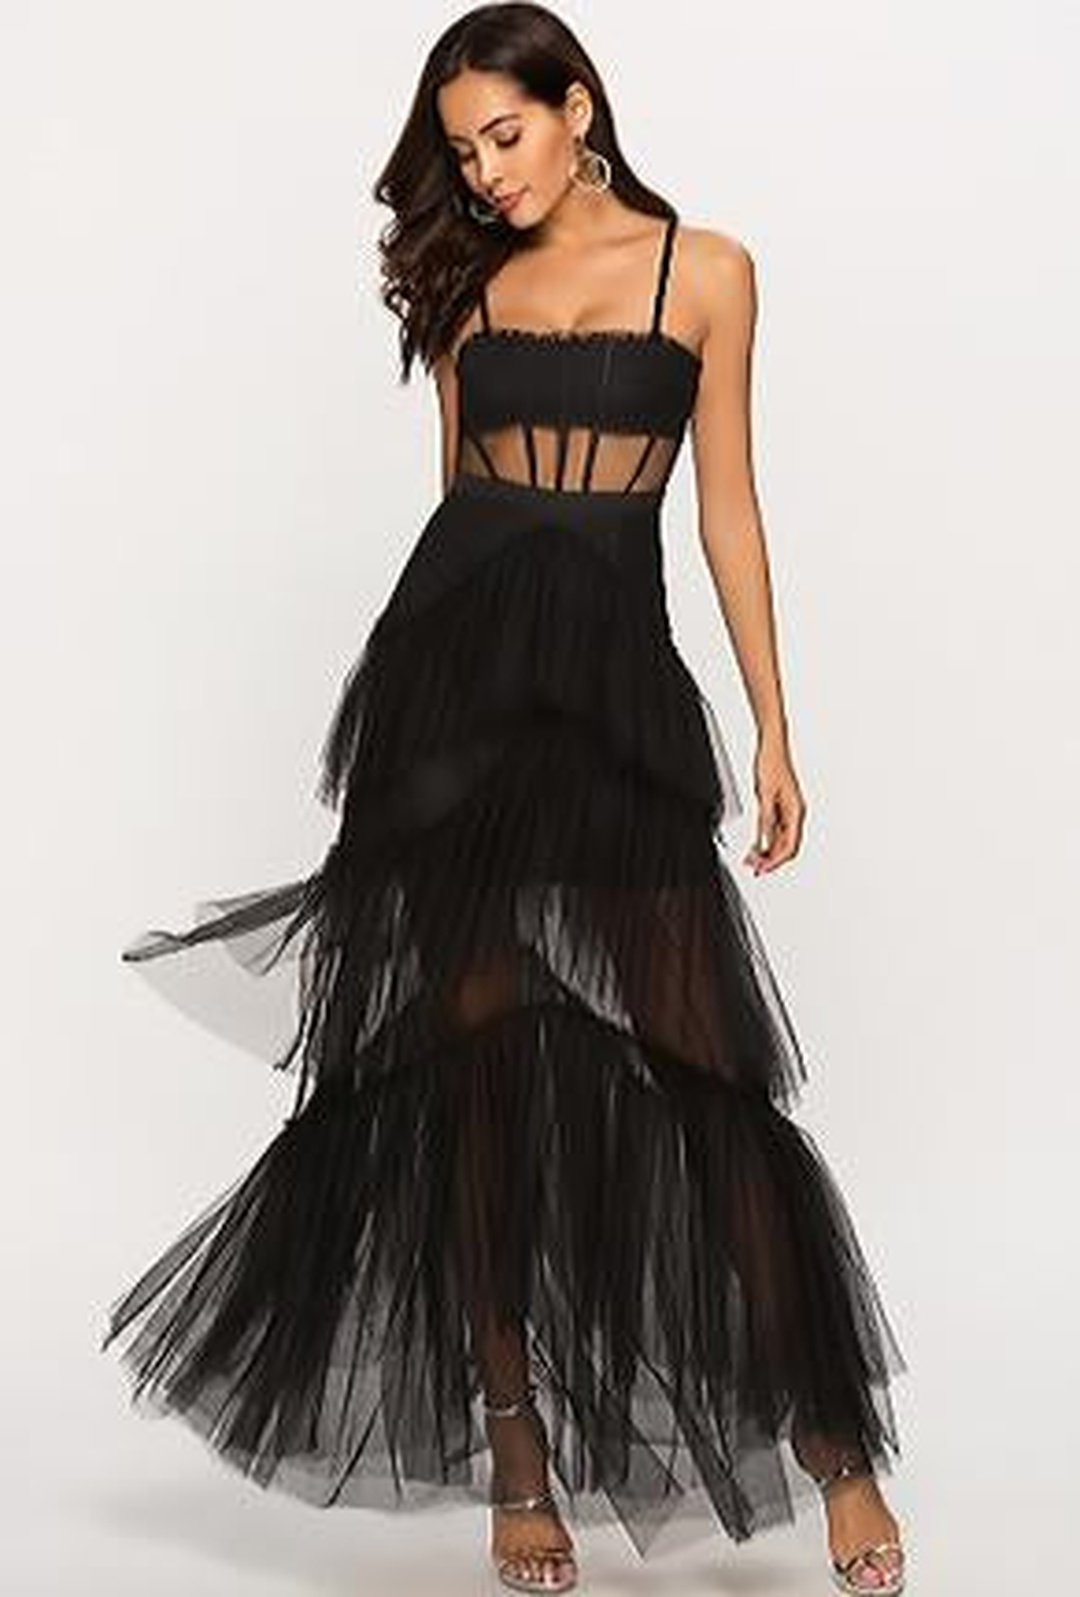 Black Maxi Dress - Strapless Bustier Dress - Organza Corset Dress